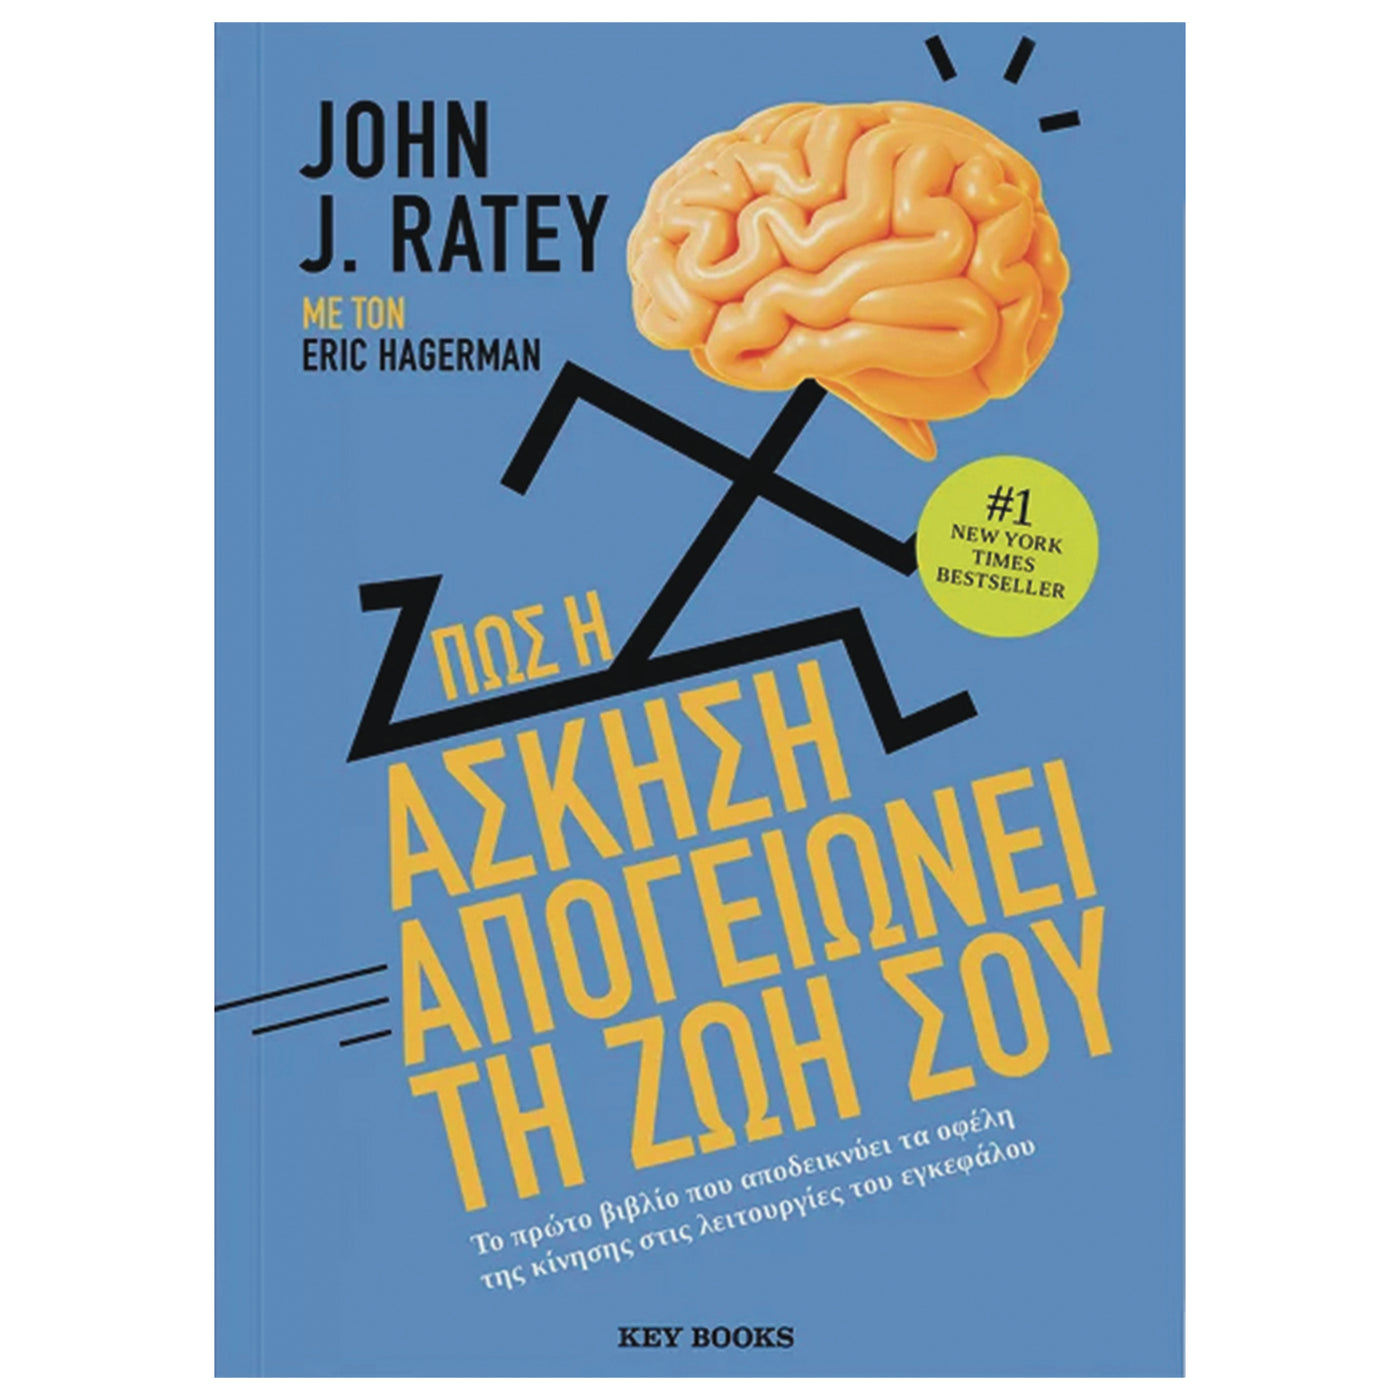 ΒΙΒΛΙΟ "ΠΩΣ Η ΑΣΚΗΣΗ ΑΠΟΓΕΙΩΝΕΙ ΤΗ ΖΩΗ ΣΟΥ" ΤΟΥ JOHN J. RATEY